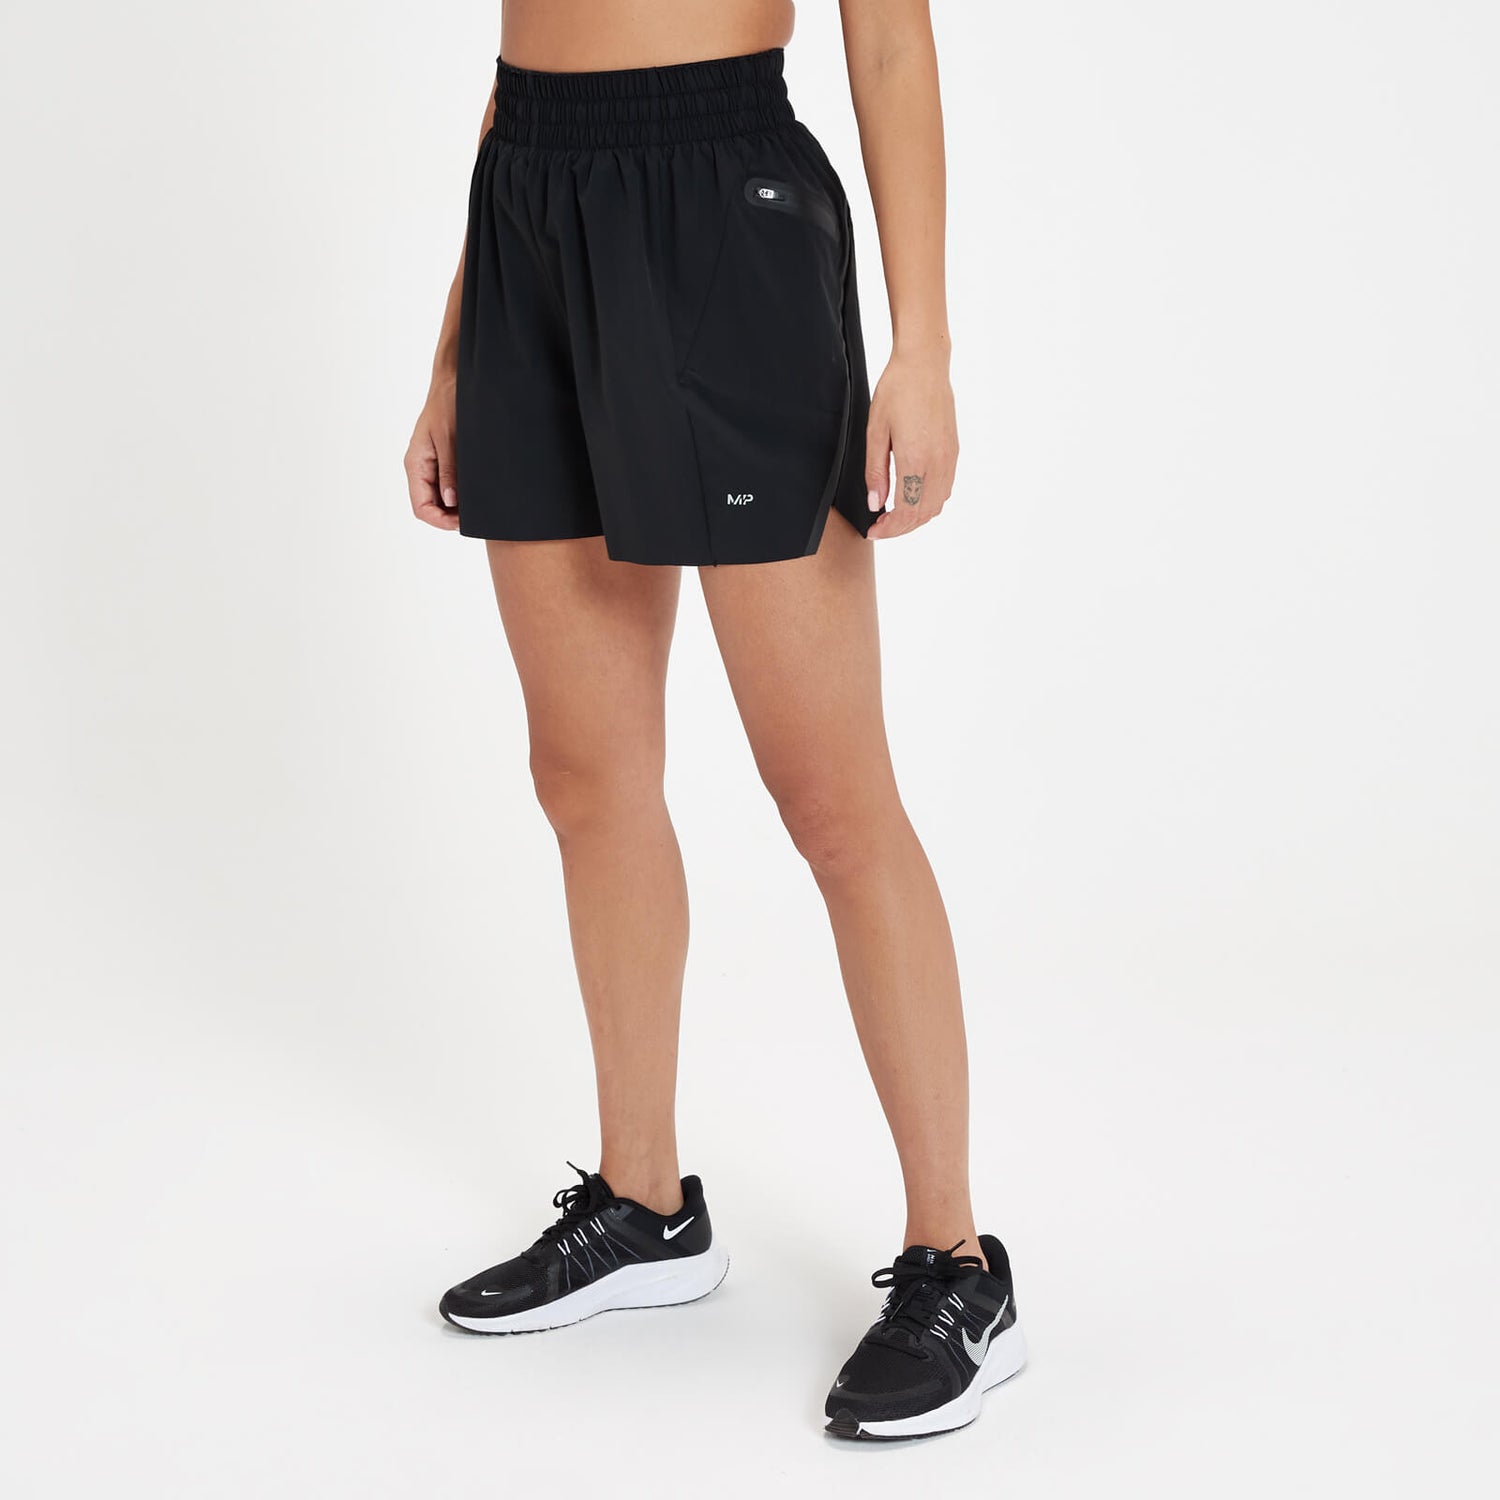 MP Women's Velocity Ultra Reflective Running Shorts - ženski šorts - crni